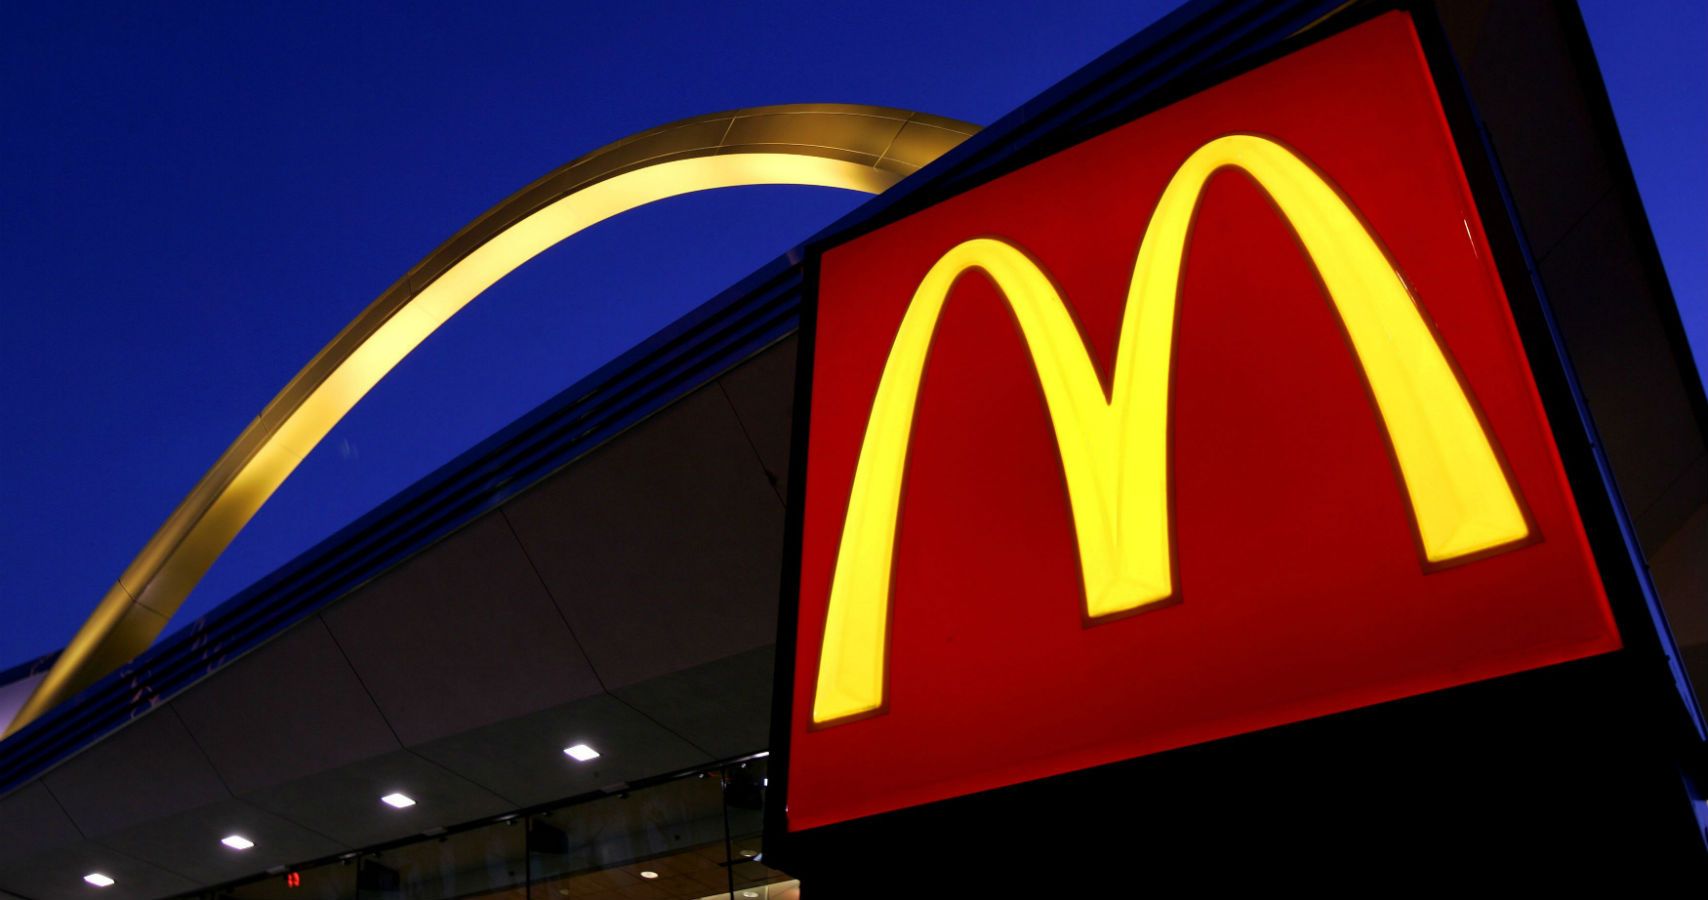 Alabama tem o maior numero de restaurantes de fast food